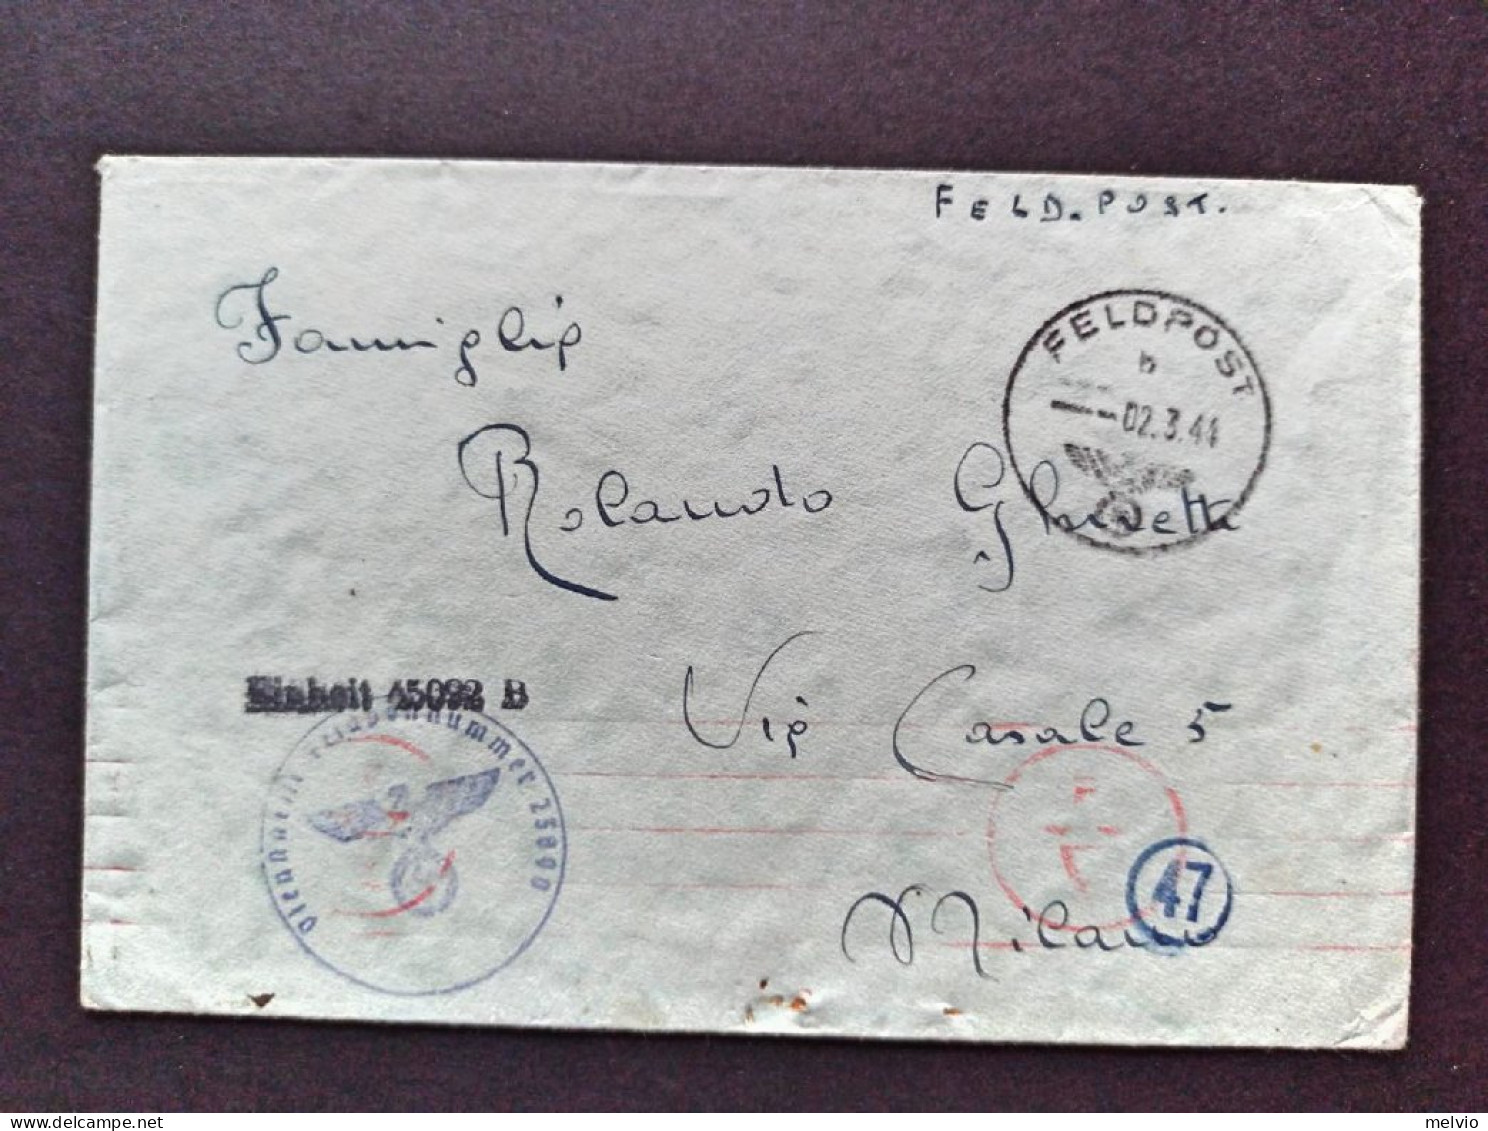 1944-Feldpostnummer 23000, Feldpost Manoscritto E Timbrato 45092 B, Per Milano - Marcophilia